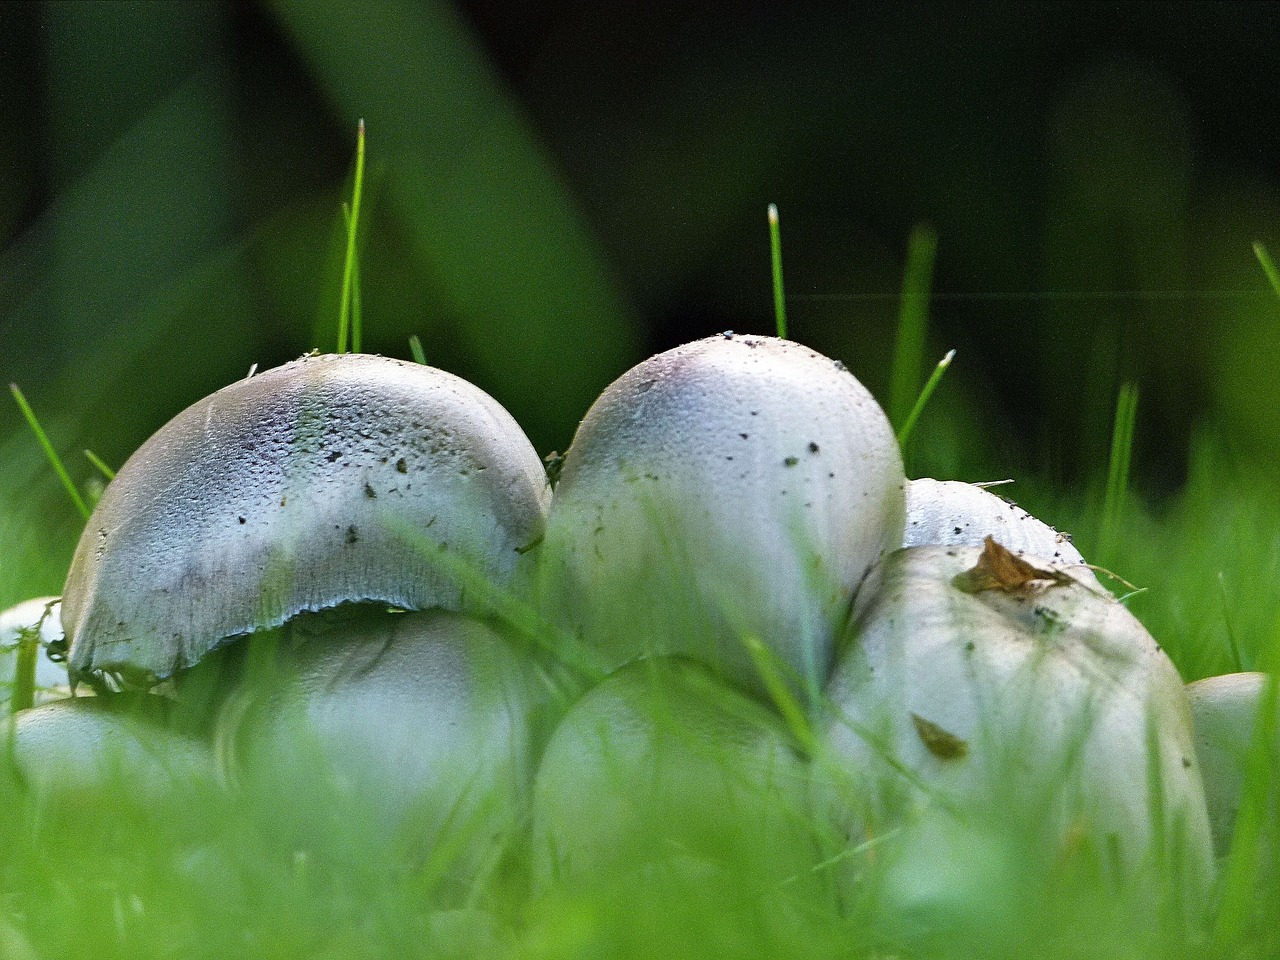 wild mushroom nature free photo